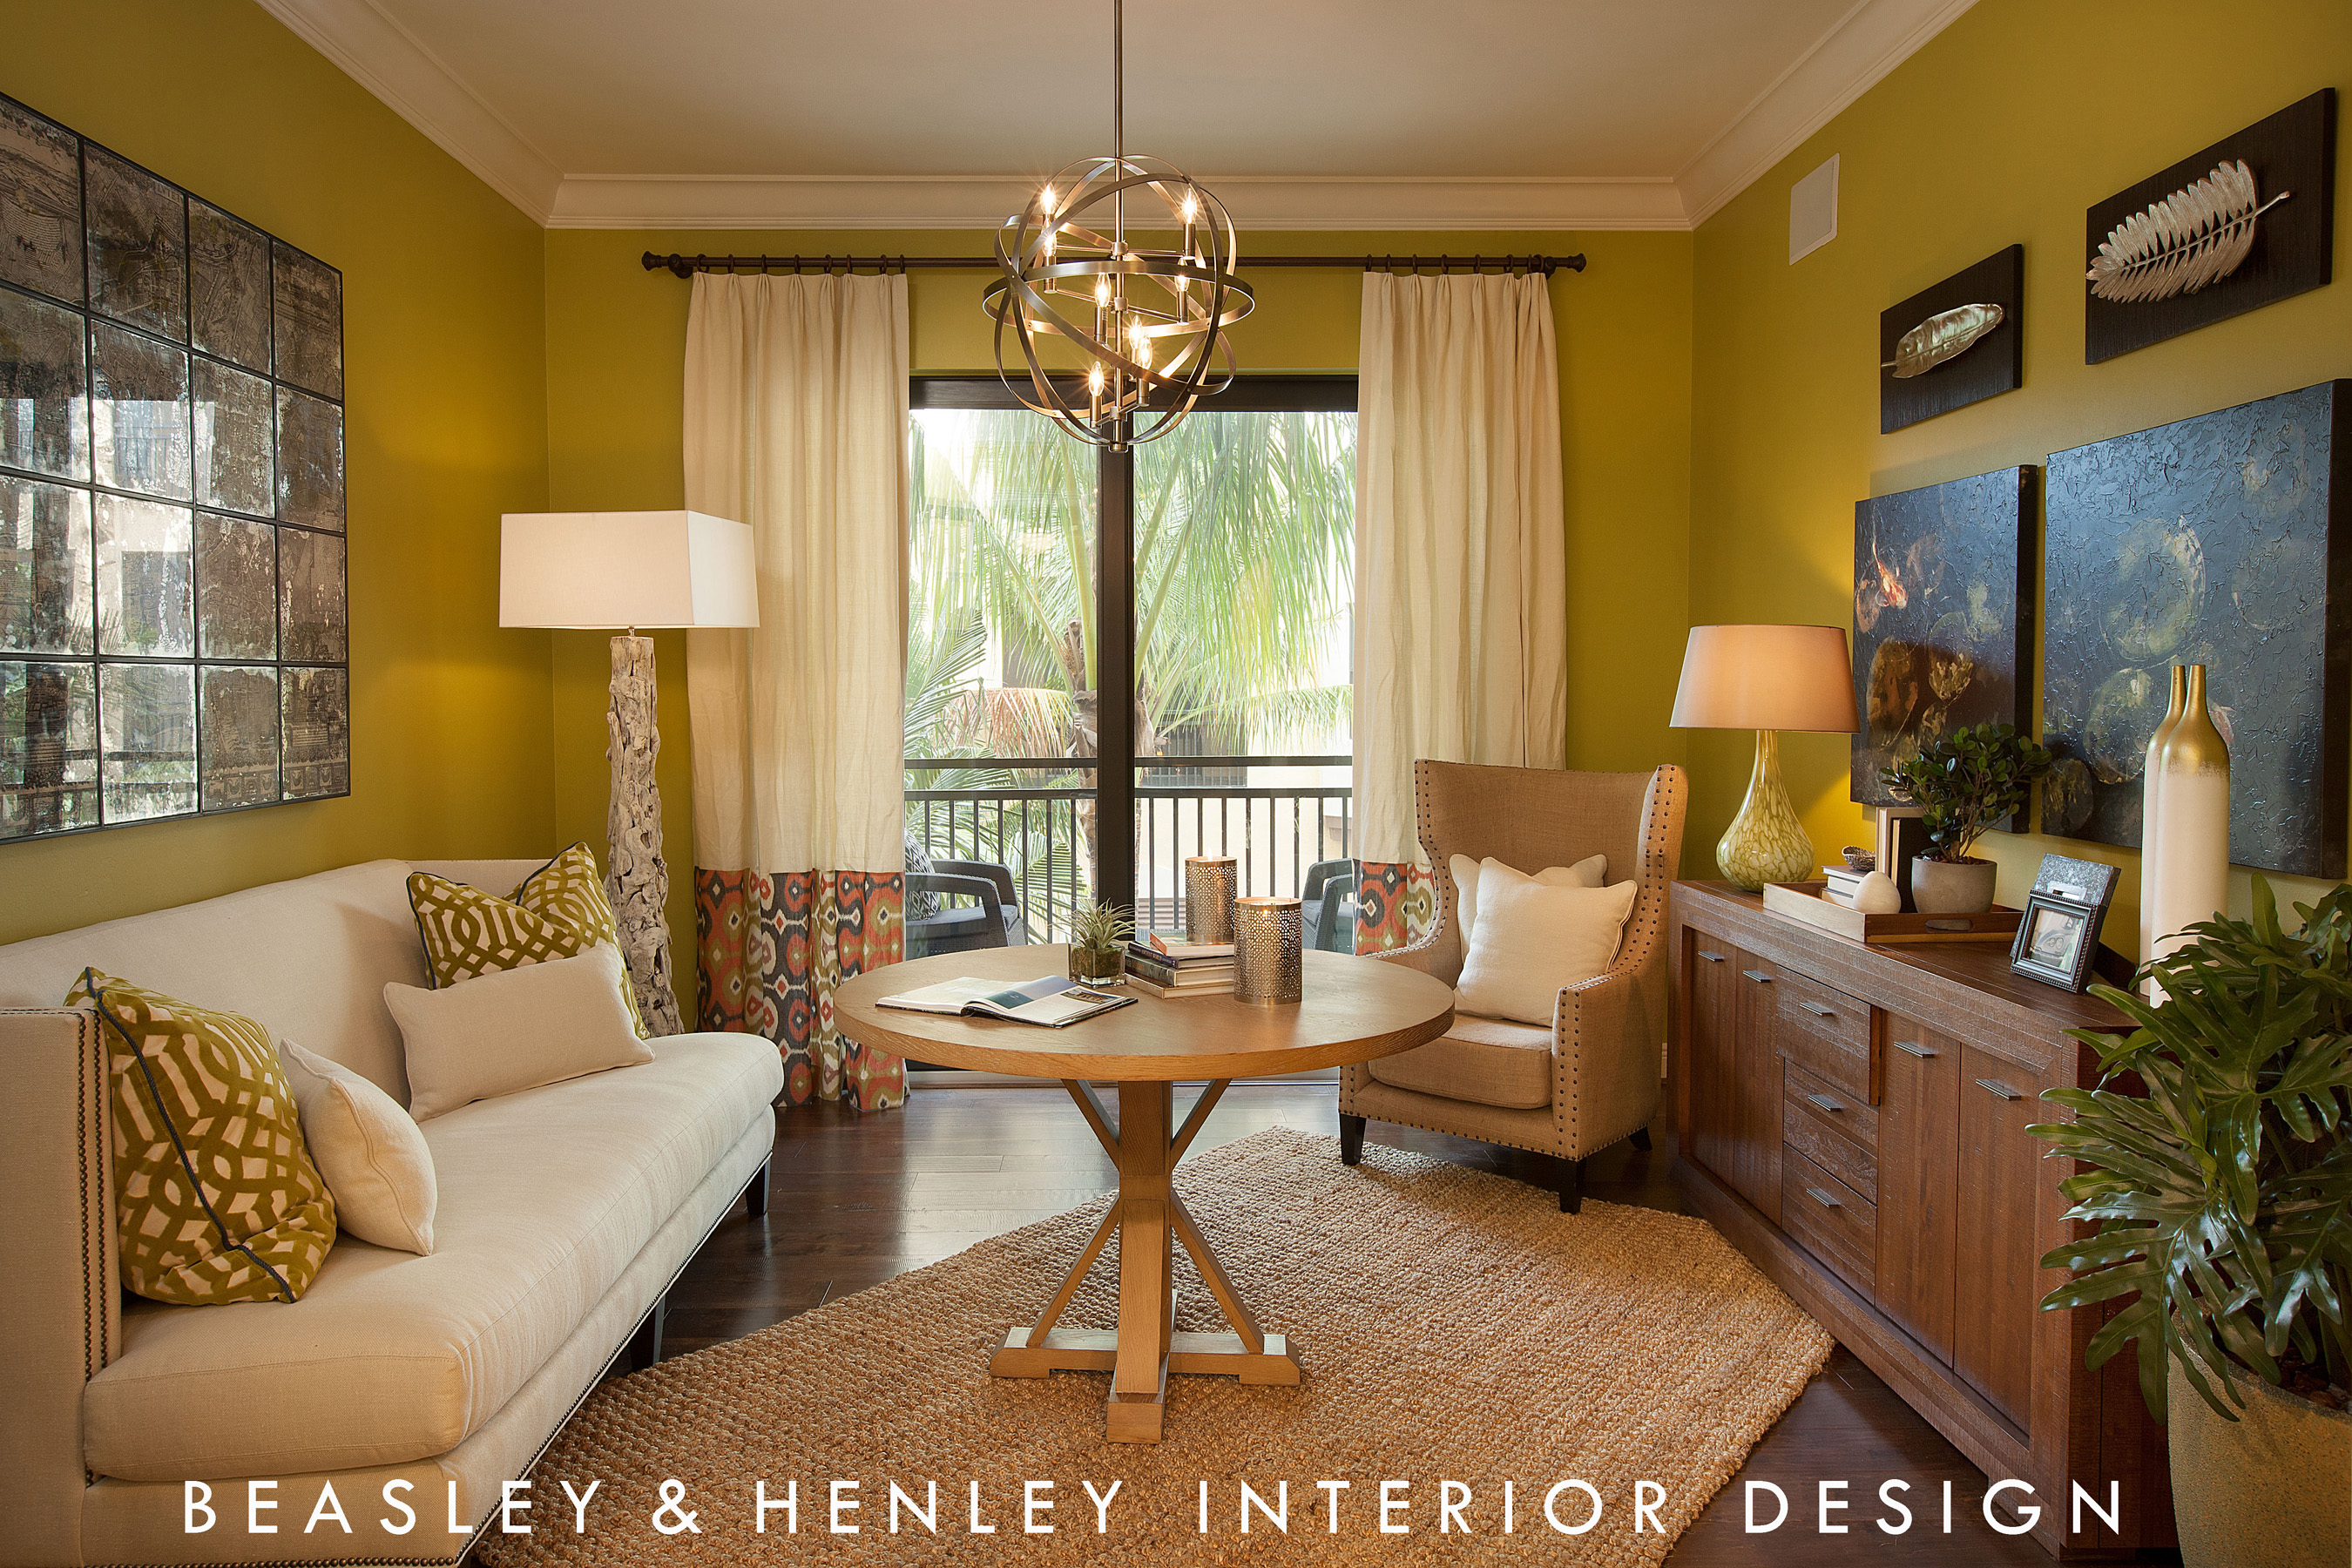 Esperanza Study by Beasley & Henley Interior Design, Naples